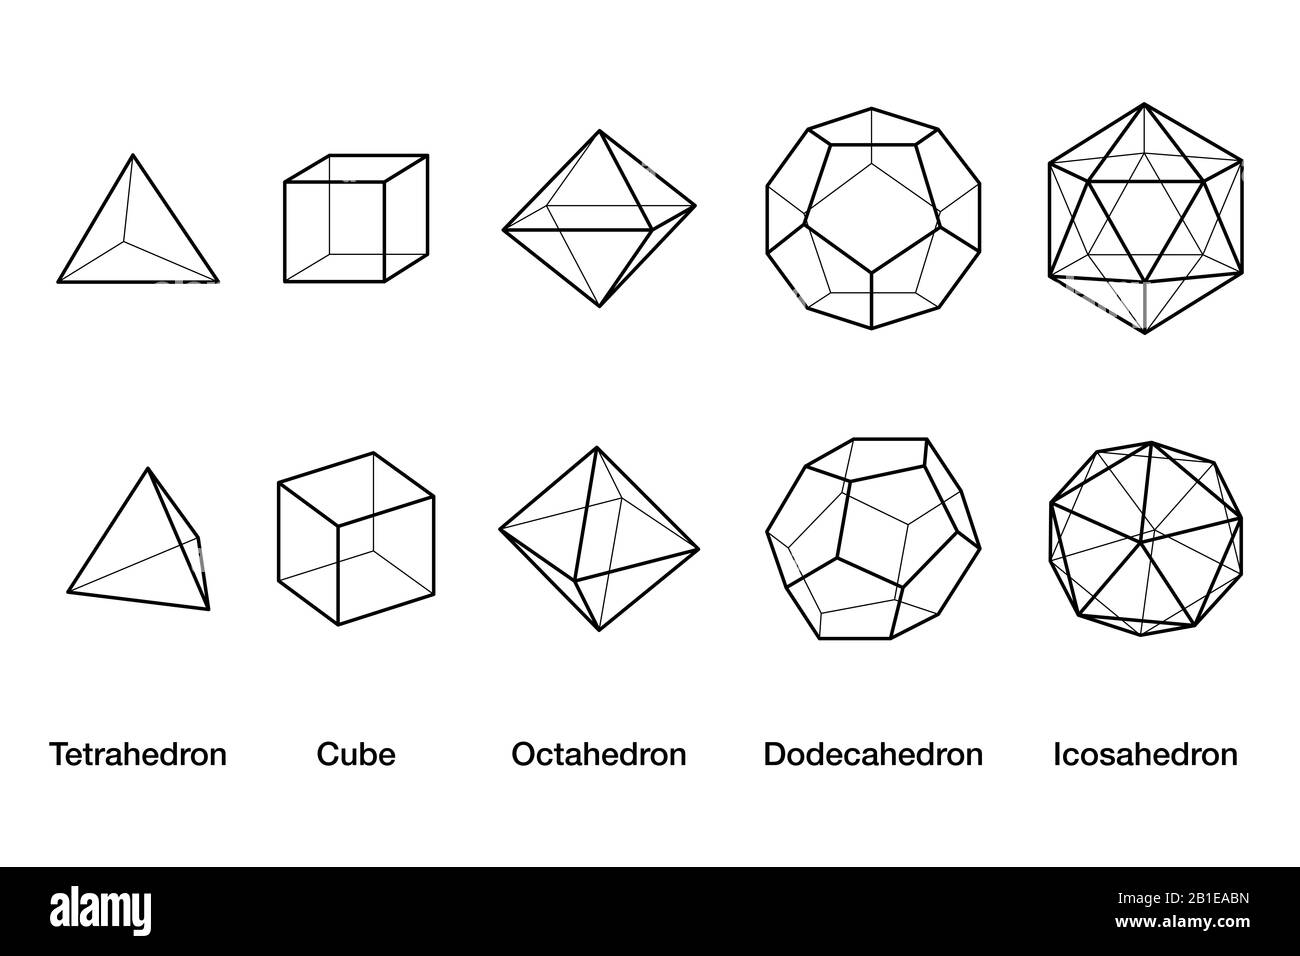 Platonische Drahtmodellmodelle für Feststoffe. Regelmäßige konvexe Polyeder im dreidimensionalen Raum mit derselben Anzahl identischer Flächen, die an jedem Scheitelpunkt aufeinandertreffen. Stockfoto